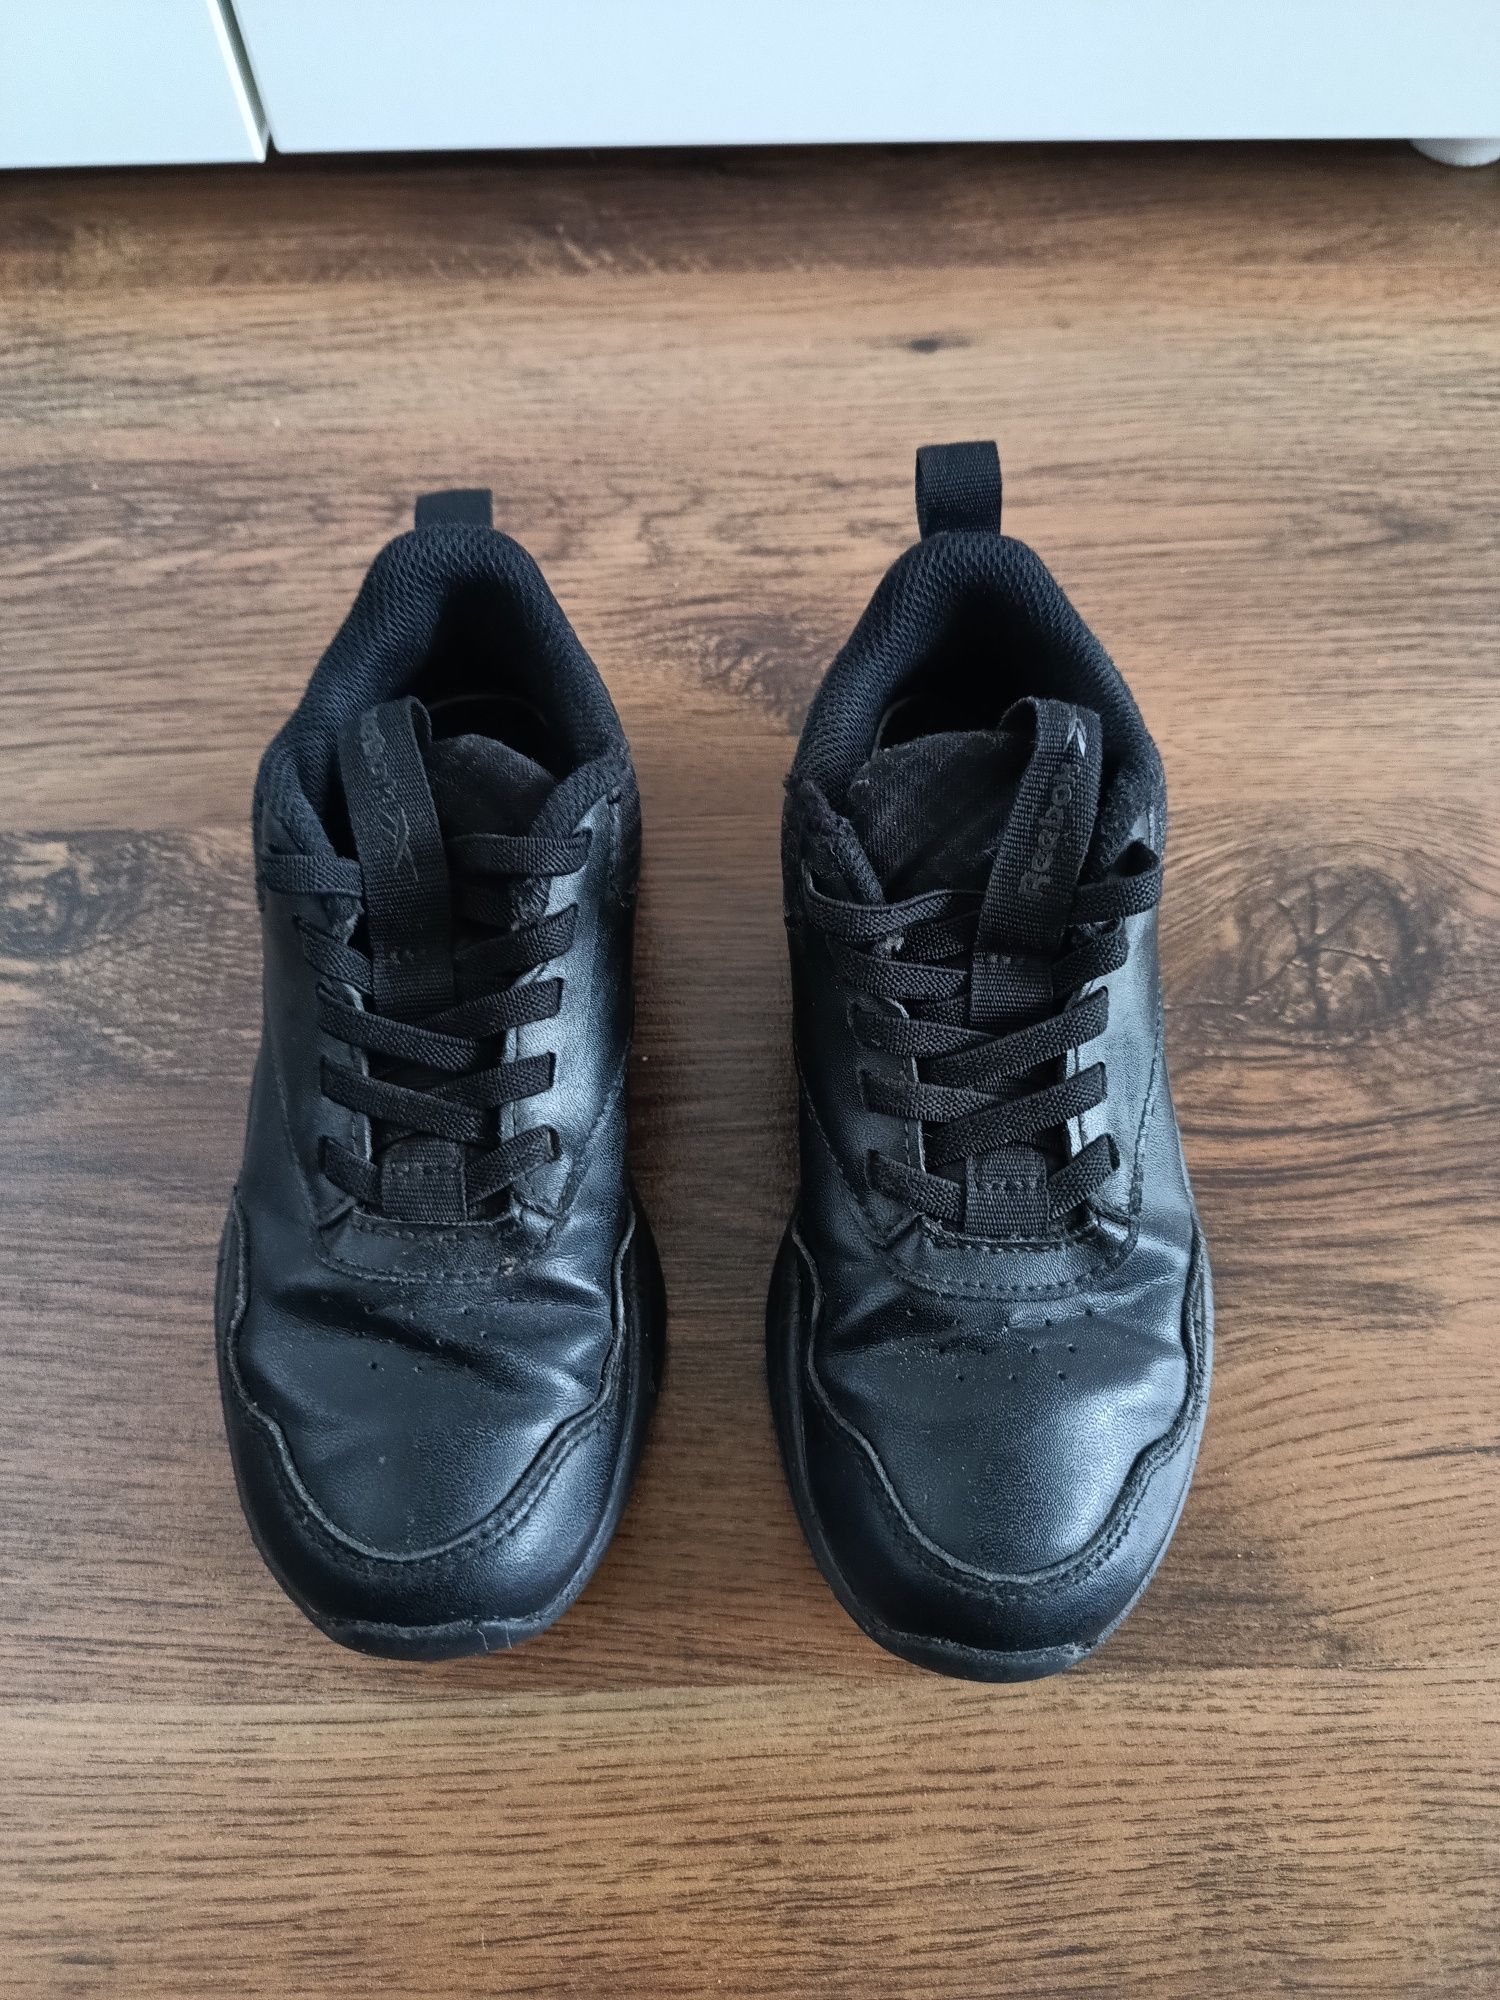 Reebok buty wkładka 20,5 cm, rozmiar 31, czarne w dobrym stanie Poznań